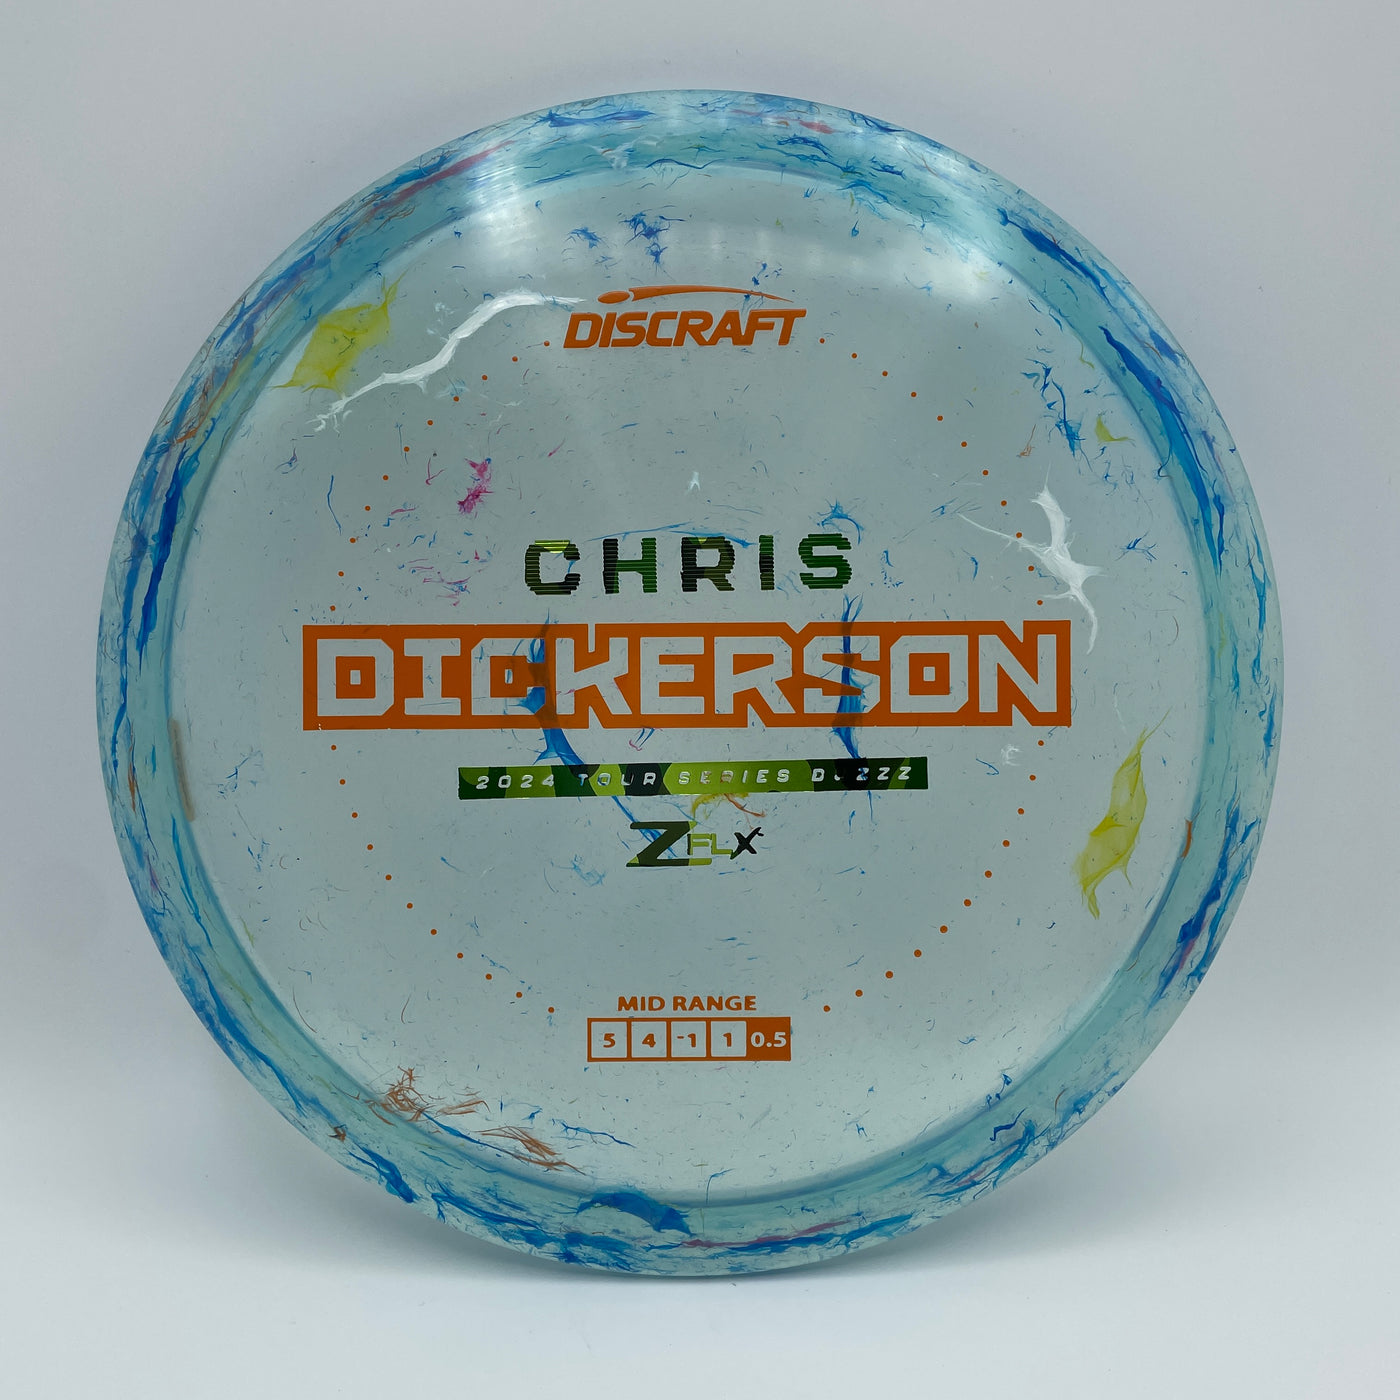 Jawbreaker Z FLX Buzzz - Chris Dickerson